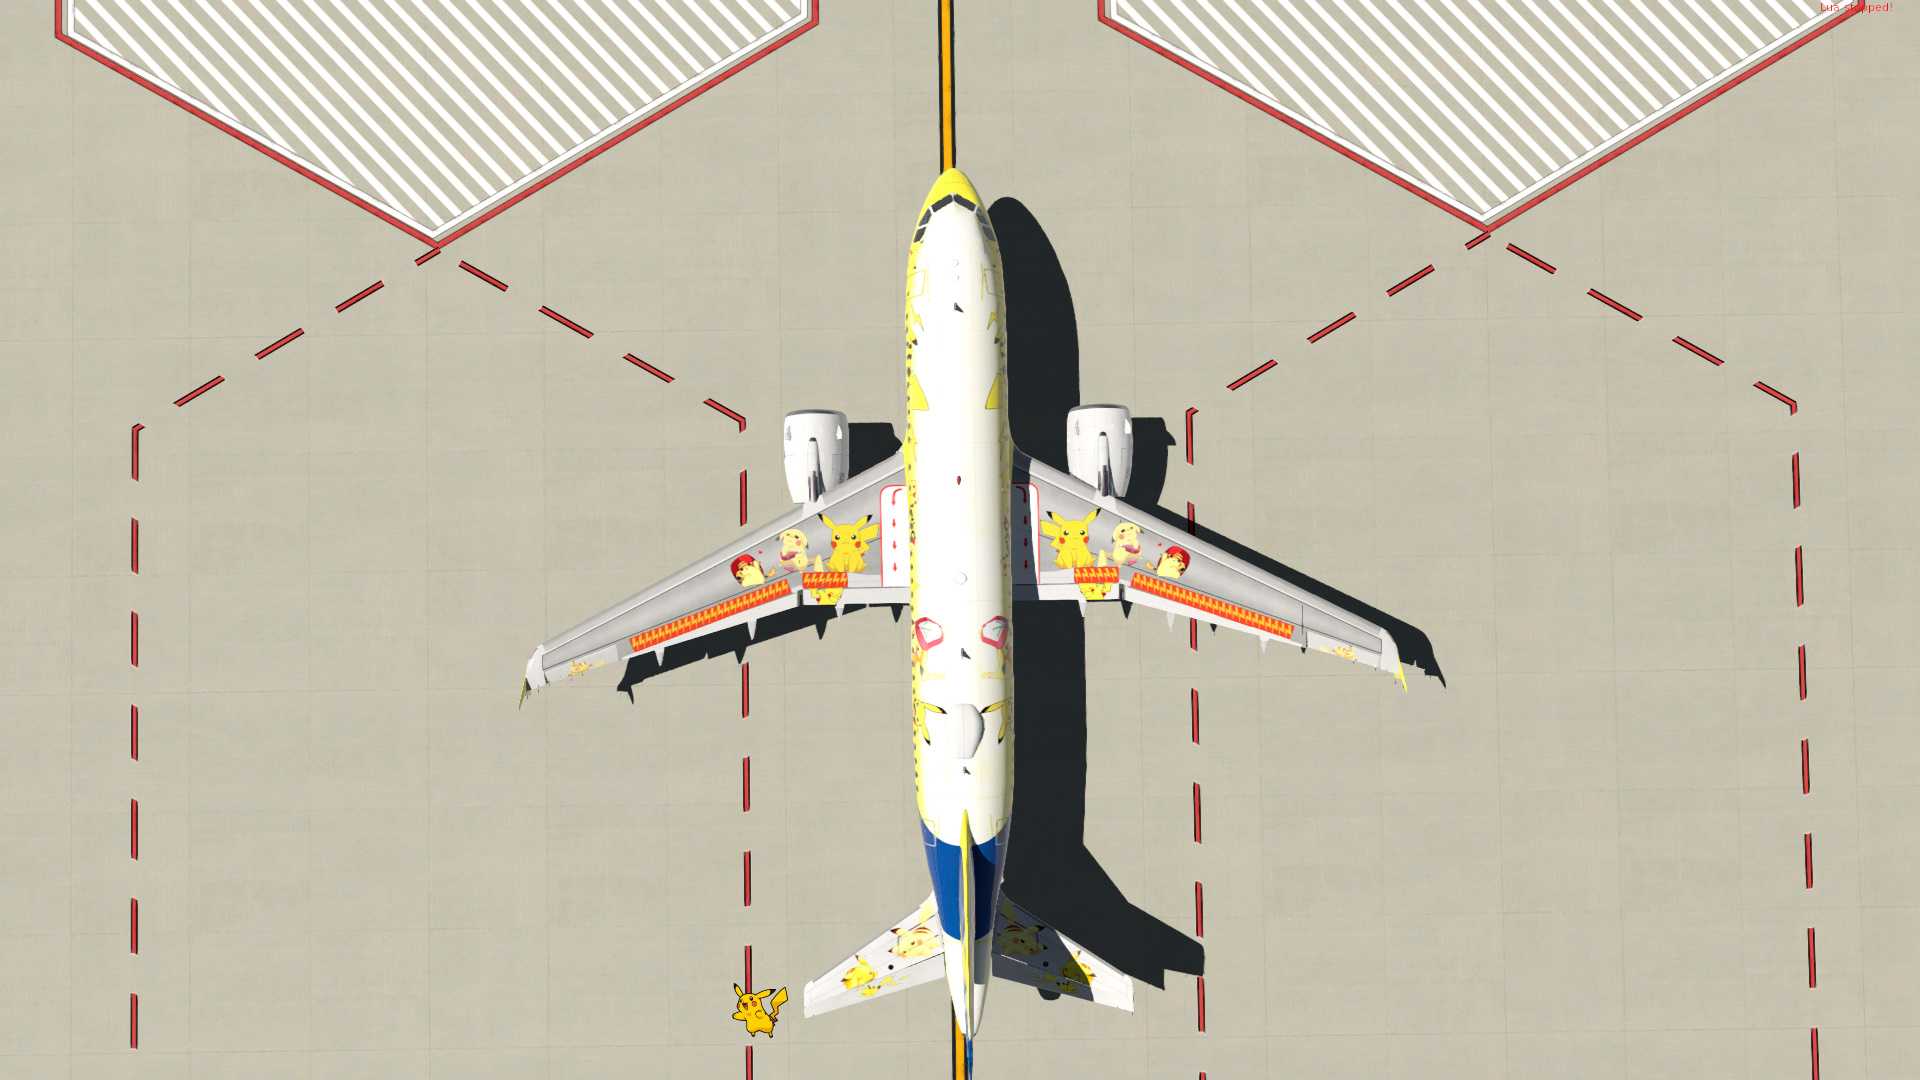 【X-Plane11】空客A319皮卡丘涂装 1.0-3302 